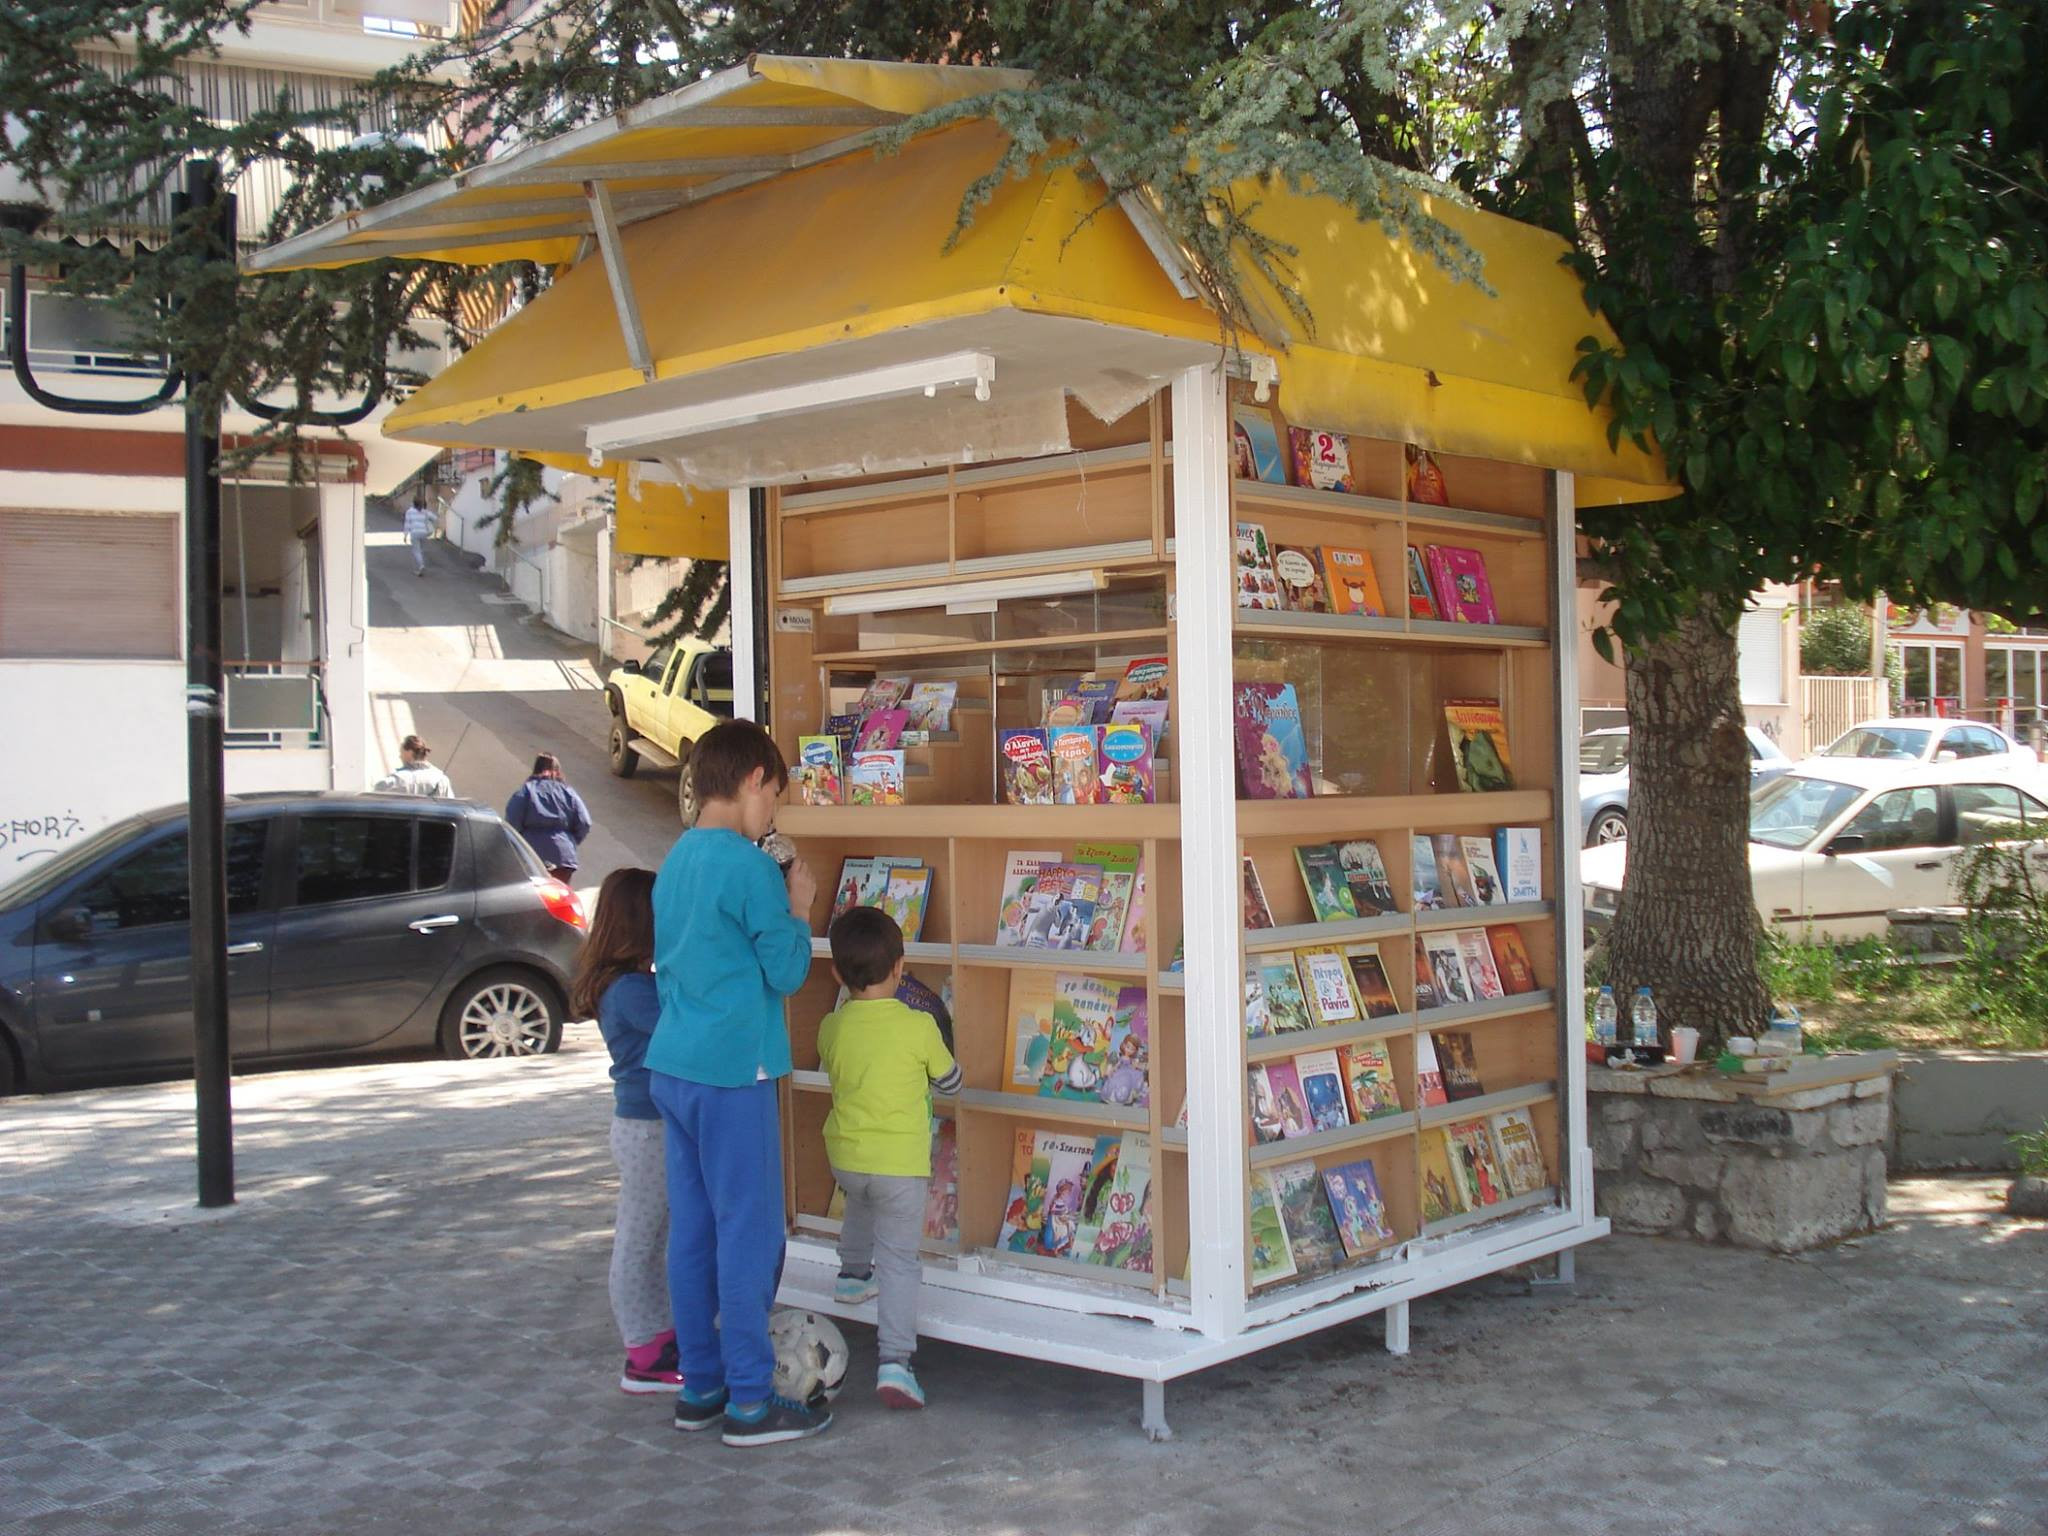 Ανταλλακτική βιβλιοθήκη για μικρούς και μεγάλους στο παλιό περίπτερο